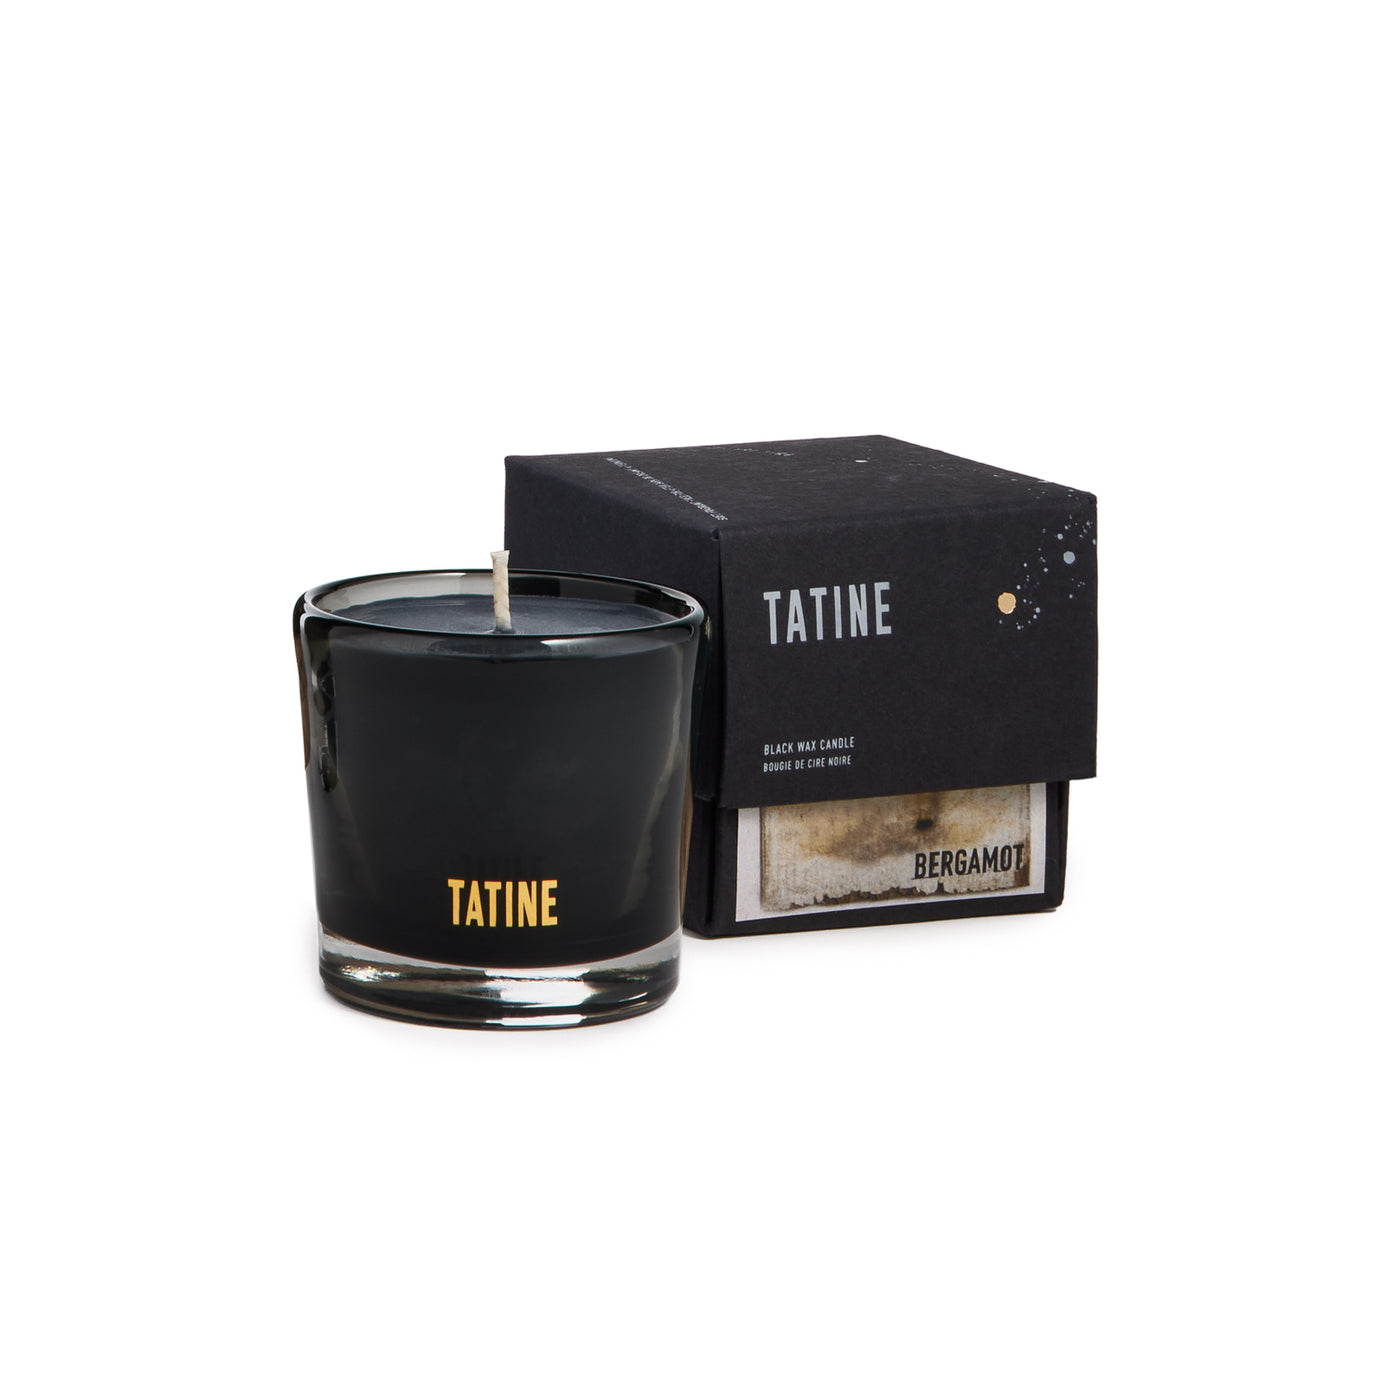 Bergamot Tatine Candle